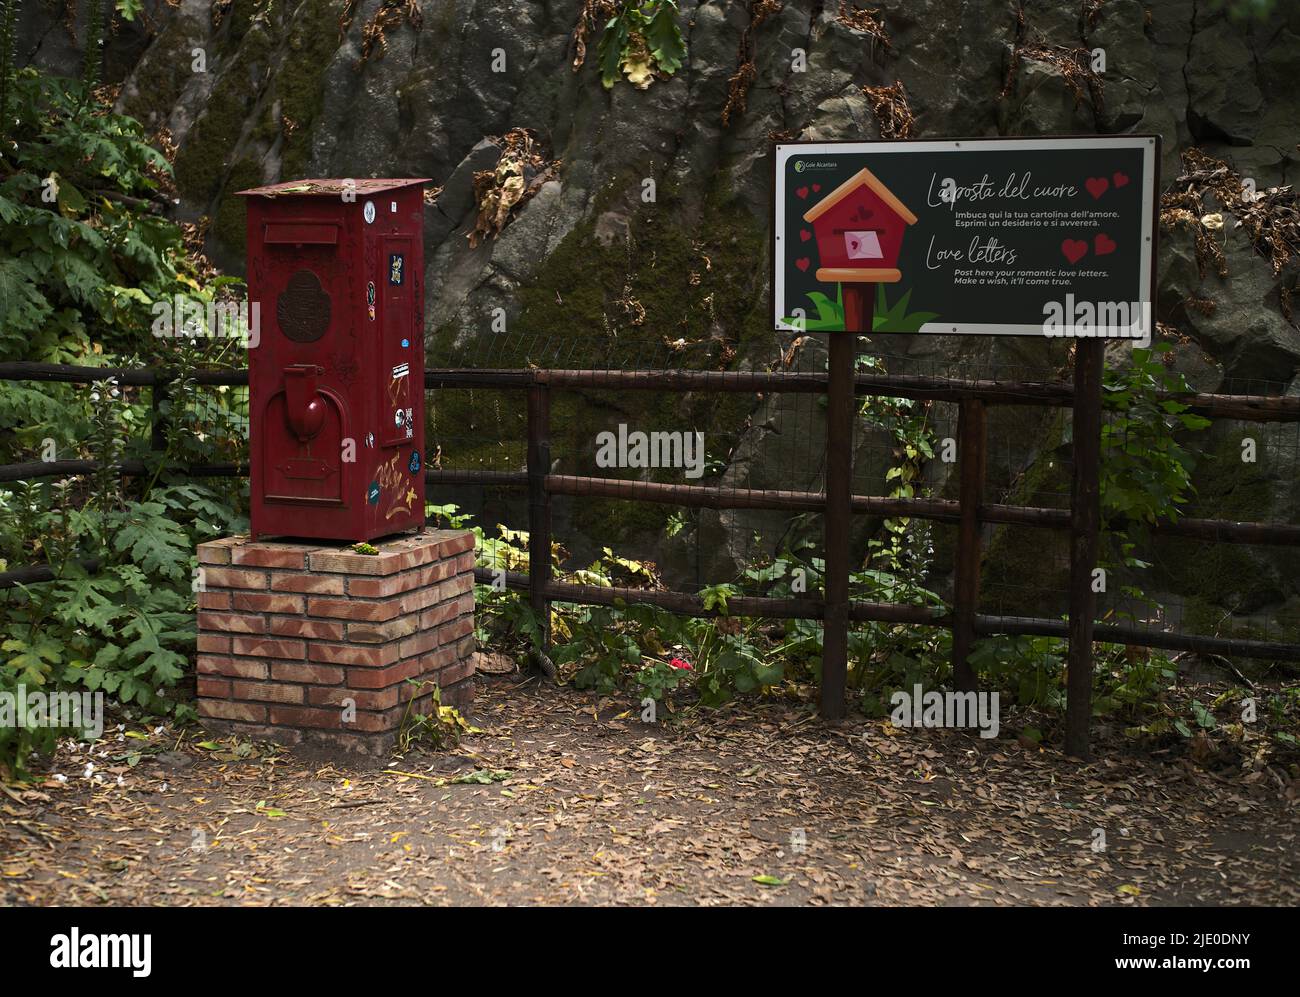 Segno e letterbox per lettere d'amore, Parco fluviale Gole dell'Alcantara, Gola dell'Alcantara, Sicilia, Italia, Europa Foto Stock